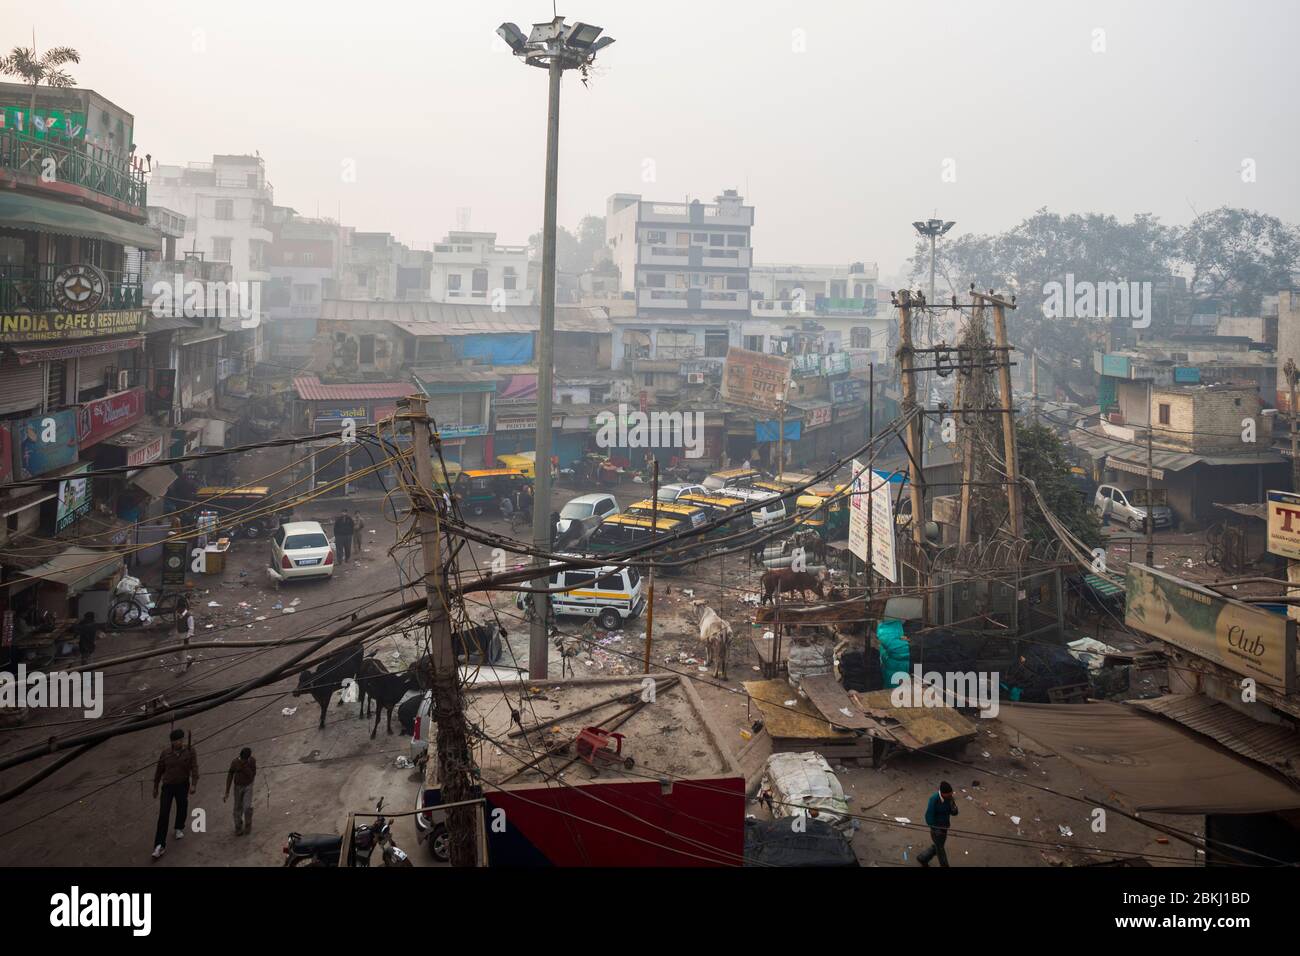 India, territorio della capitale nazionale di Delhi, Nuova Delhi, distretto di Paharganj, vista elevata su un incrocio affollato di passanti, mucche, veicoli e negozi Foto Stock